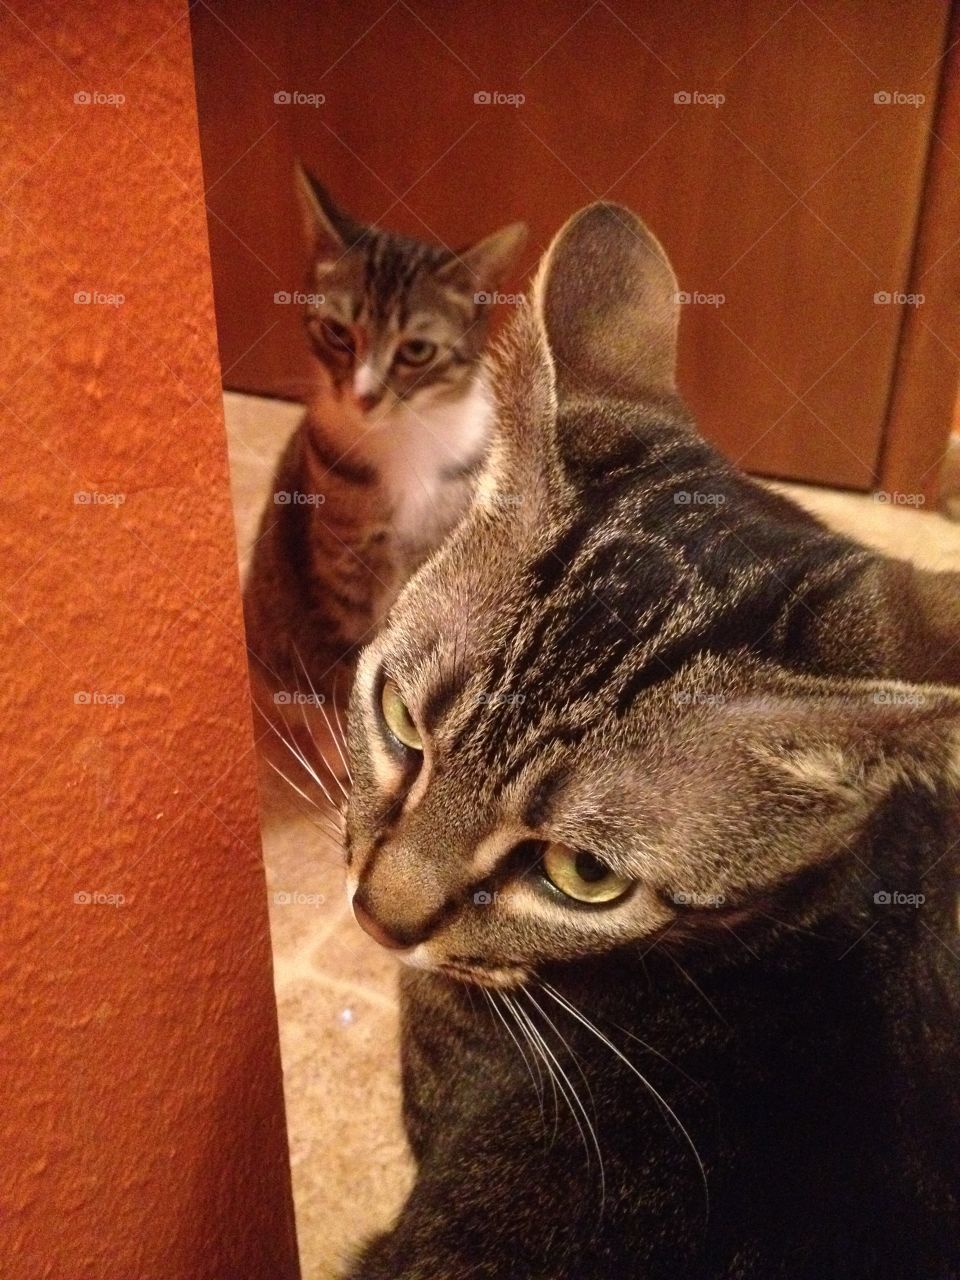 Guilty Kitten. Two kittens caught being mischievous.